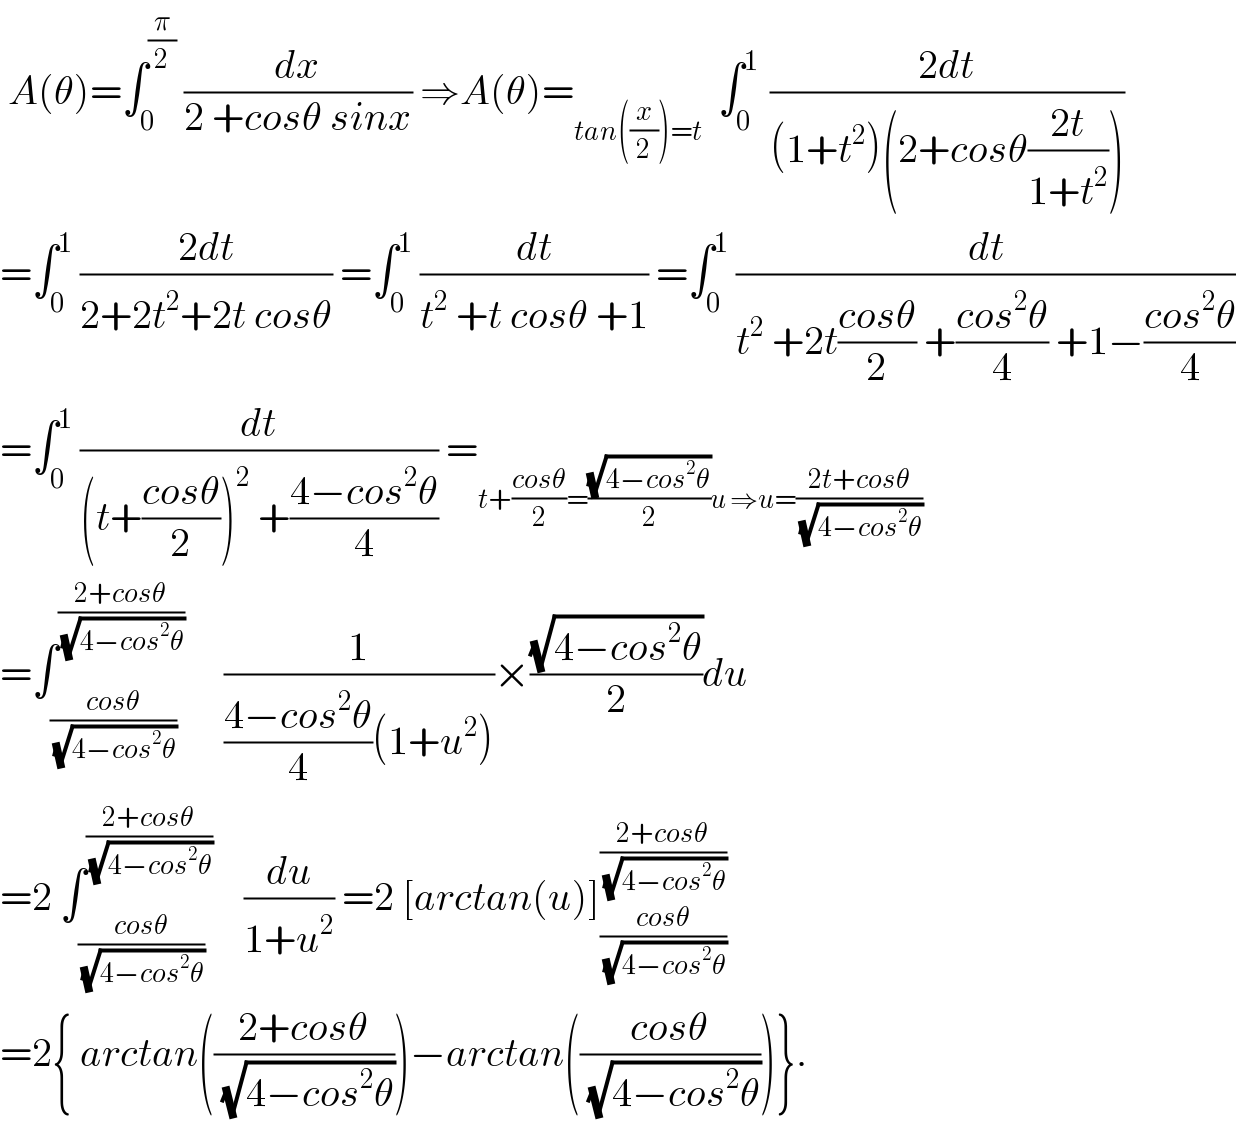  A(θ)=∫_0 ^(π/2)  (dx/(2 +cosθ sinx)) ⇒A(θ)=_(tan((x/2))=t)   ∫_0 ^(1 )  ((2dt)/((1+t^2 )(2+cosθ((2t)/(1+t^2 )))))  =∫_0 ^1  ((2dt)/(2+2t^2 +2t cosθ)) =∫_0 ^1  (dt/(t^2  +t cosθ +1)) =∫_0 ^1  (dt/(t^2  +2t((cosθ)/2) +((cos^2 θ)/4) +1−((cos^2 θ)/4)))  =∫_0 ^1  (dt/((t+((cosθ)/2))^2  +((4−cos^2 θ)/4))) =_(t+((cosθ)/2)=((√(4−cos^2 θ))/2)u ⇒u=((2t+cosθ)/(√(4−cos^2 θ))))   =∫_((cosθ)/(√(4−cos^2 θ))) ^((2+cosθ)/(√(4−cos^2 θ)))      (1/(((4−cos^2 θ)/4)(1+u^2 )))×((√(4−cos^2 θ))/2)du  =2 ∫_((cosθ)/(√(4−cos^2 θ))) ^((2+cosθ)/(√(4−cos^2 θ)))     (du/(1+u^2 )) =2 [arctan(u)]_((cosθ)/(√(4−cos^2 θ))) ^((2+cosθ)/(√(4−cos^2 θ)))   =2{ arctan(((2+cosθ)/(√(4−cos^2 θ))))−arctan(((cosθ)/(√(4−cos^2 θ))))}.  